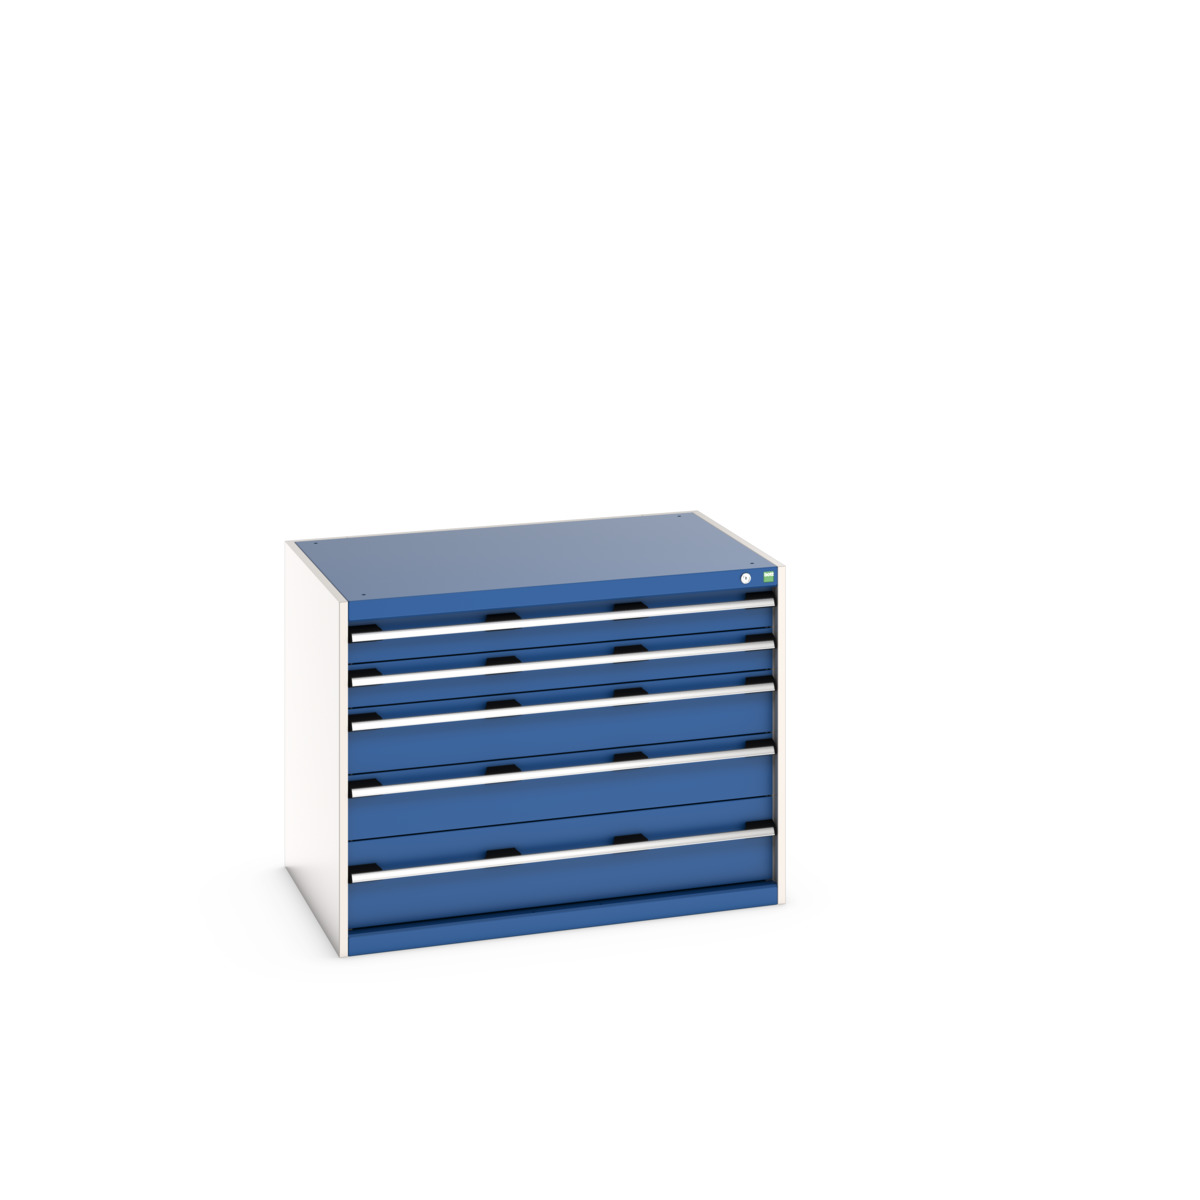 40029009.11V - cubio drawer cabinet